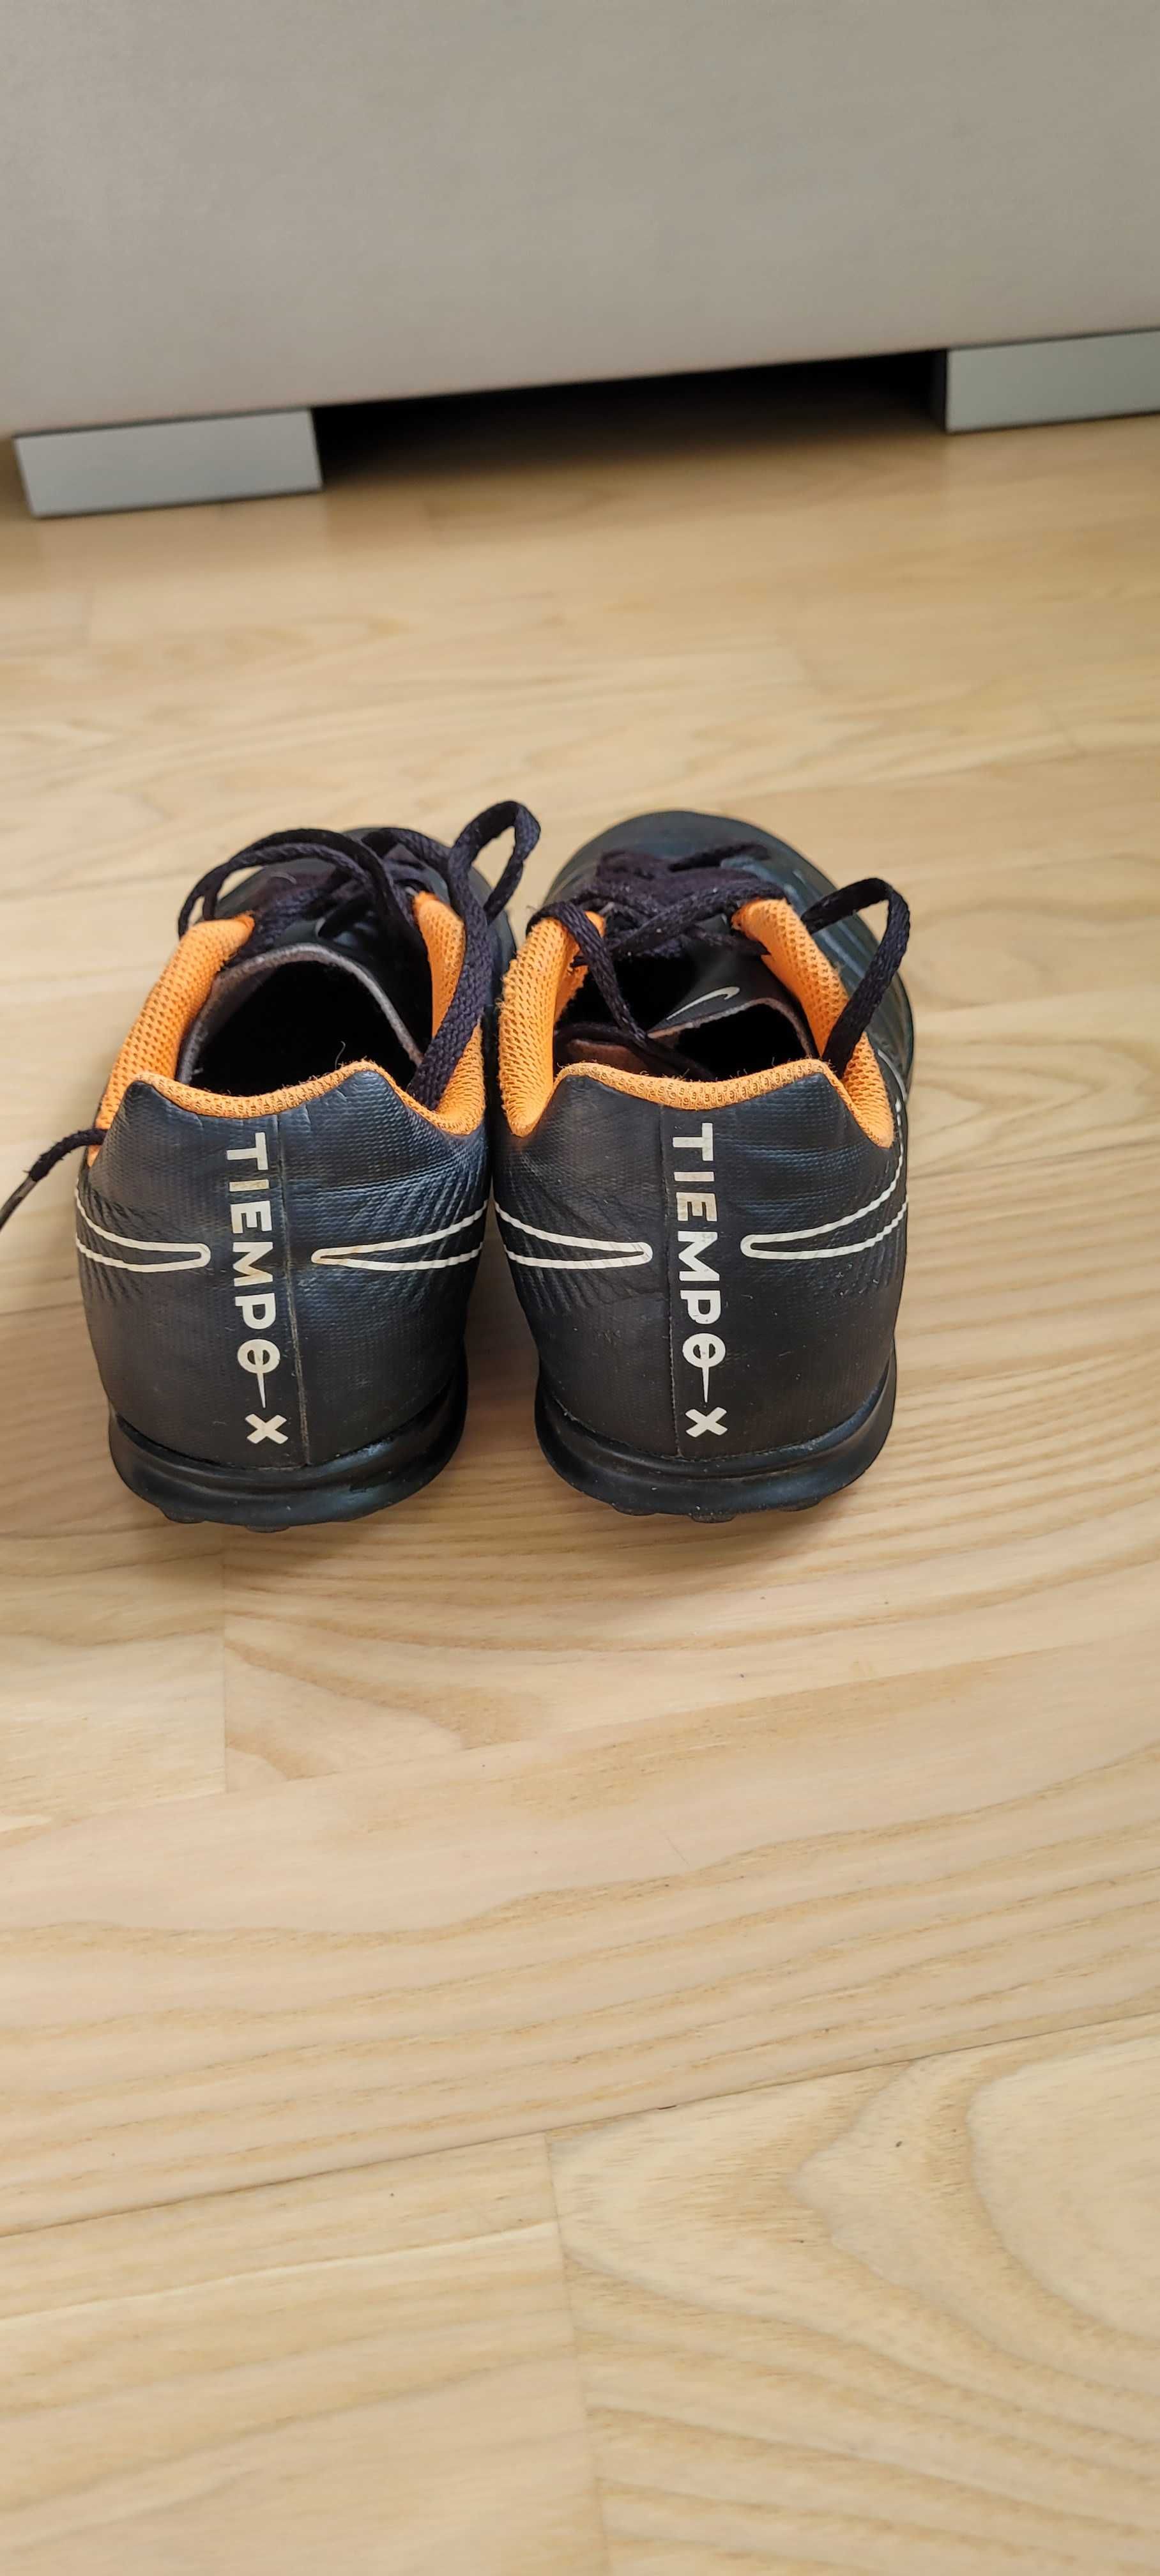 Buty piłkarskie Nike groszki [r38, 23cm]